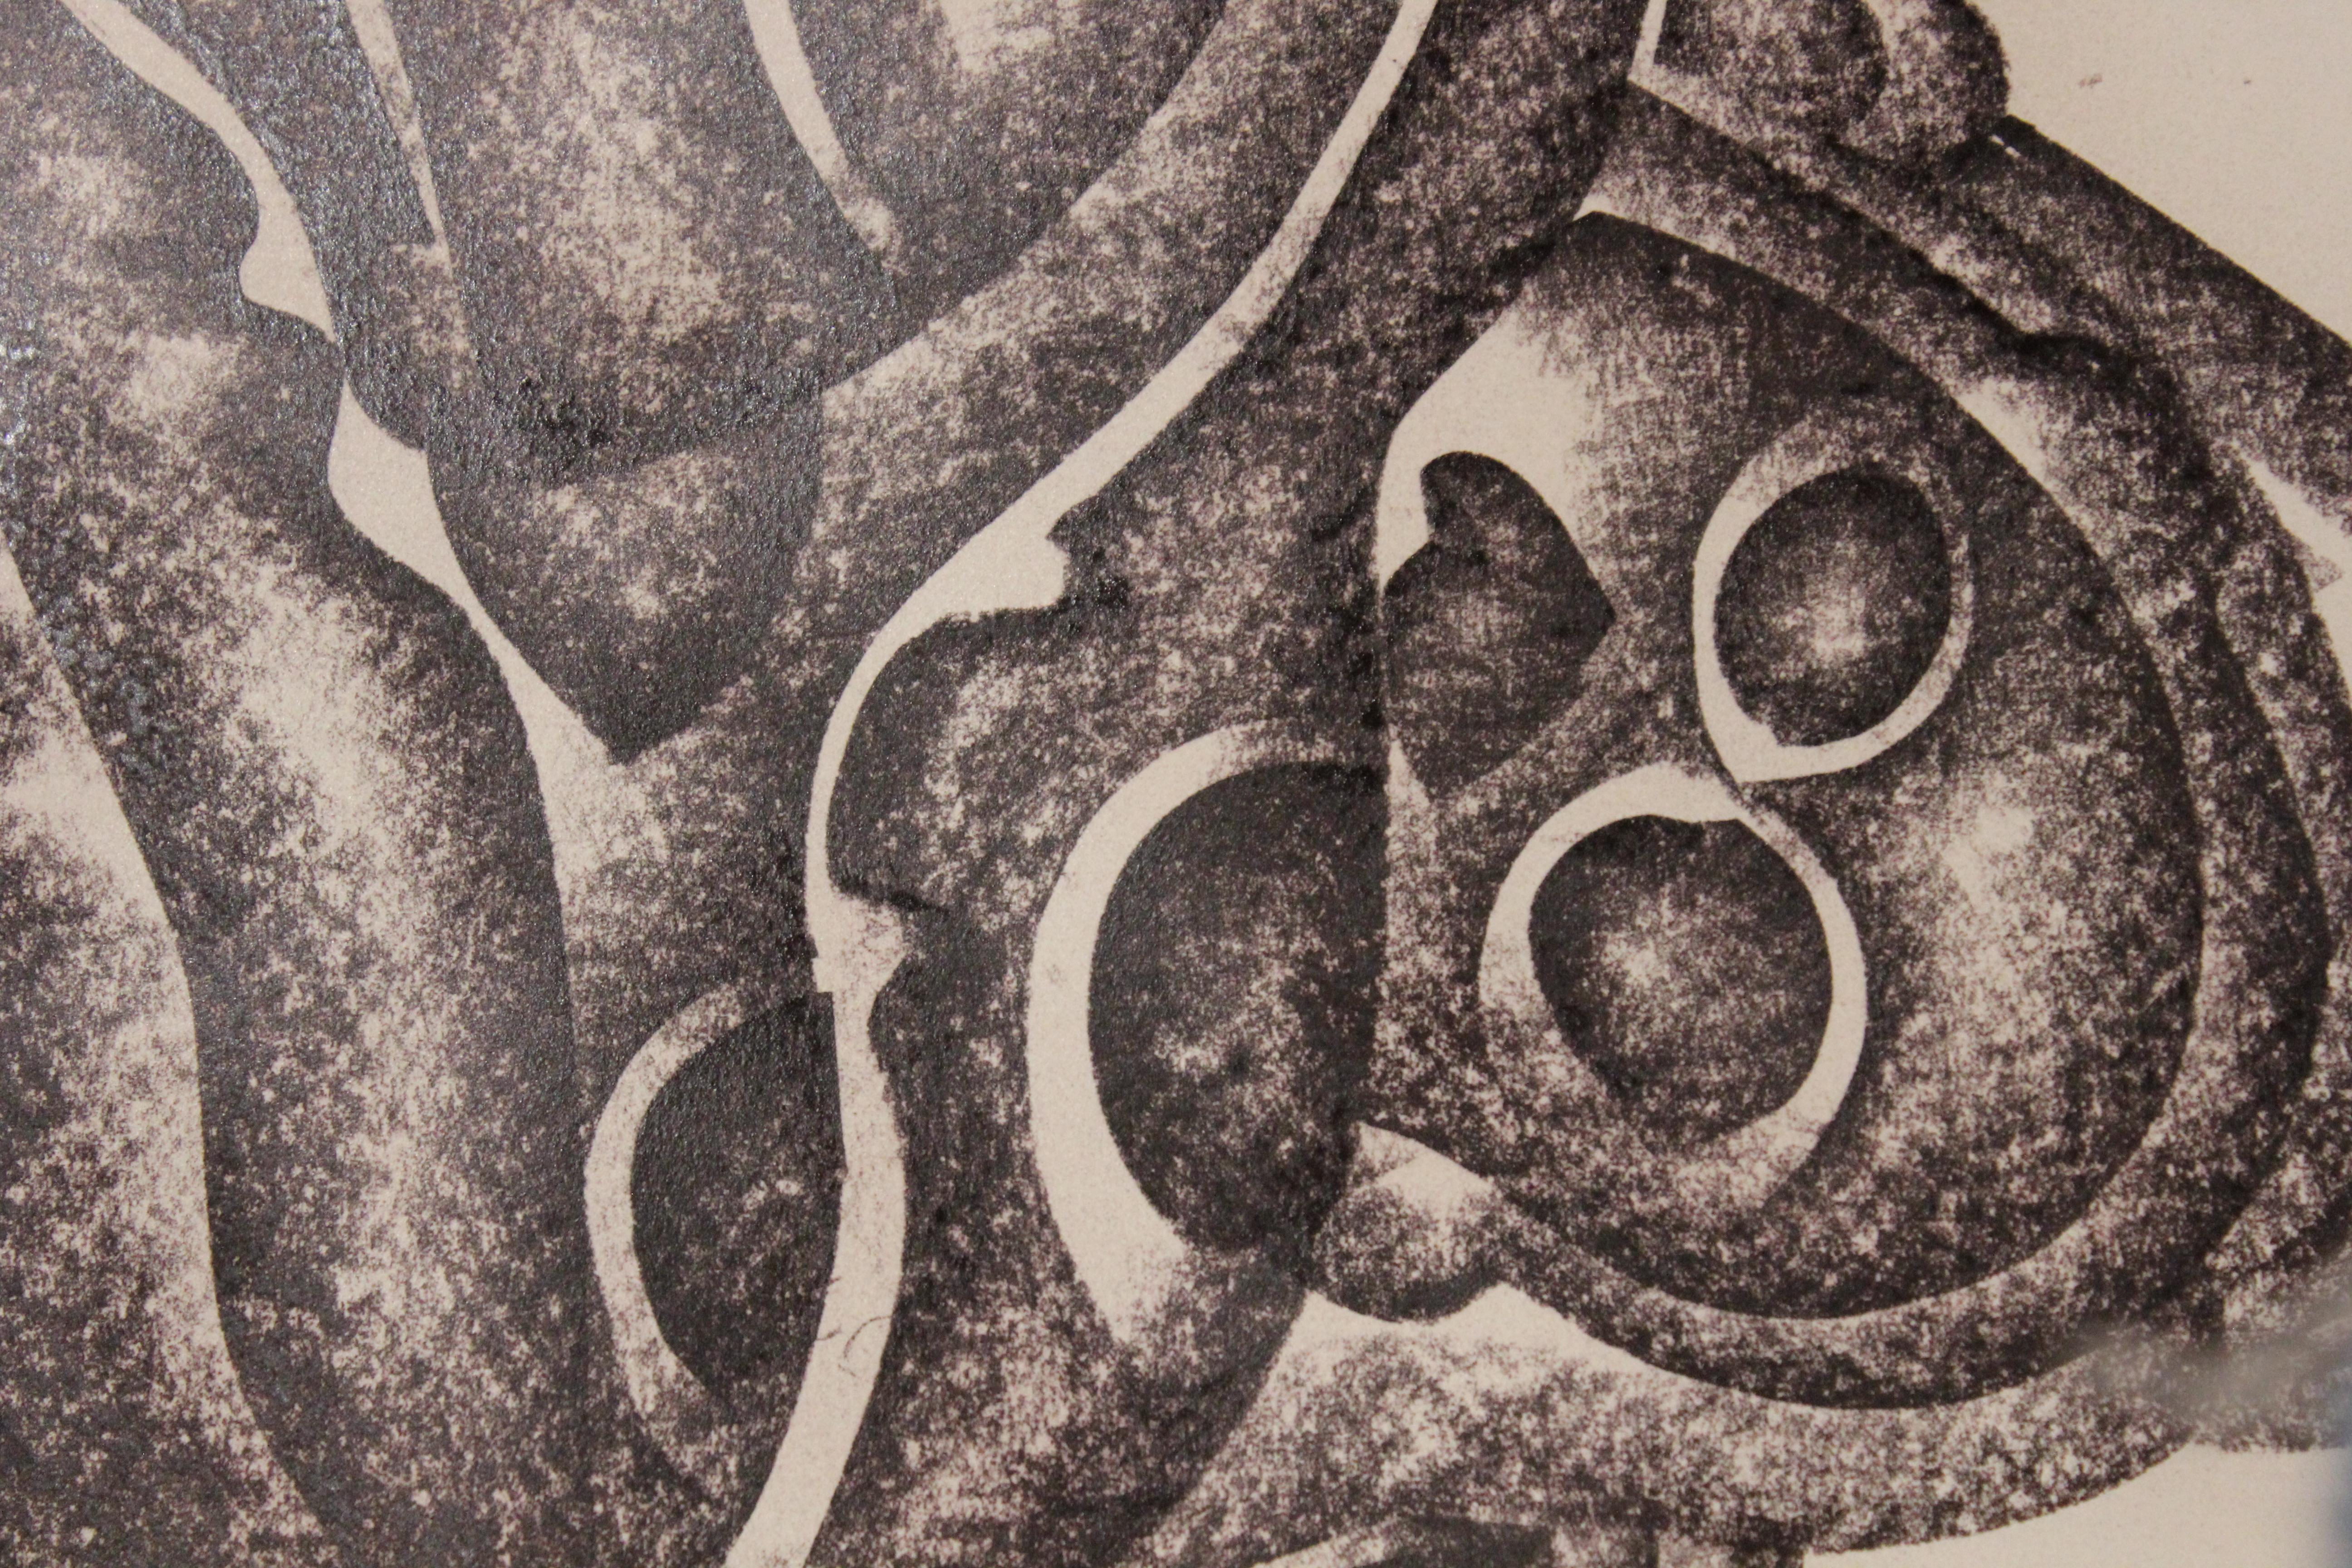 Portrait en noir et blanc d'une femme réalisé dans un style qui combine abstraction et cubisme, à l'instar de l'œuvre de Fernand Léger. Signé et daté dans le coin inférieur gauche.

Biographie de l'artiste :
Valery Kleverov est né à Engels, dans la